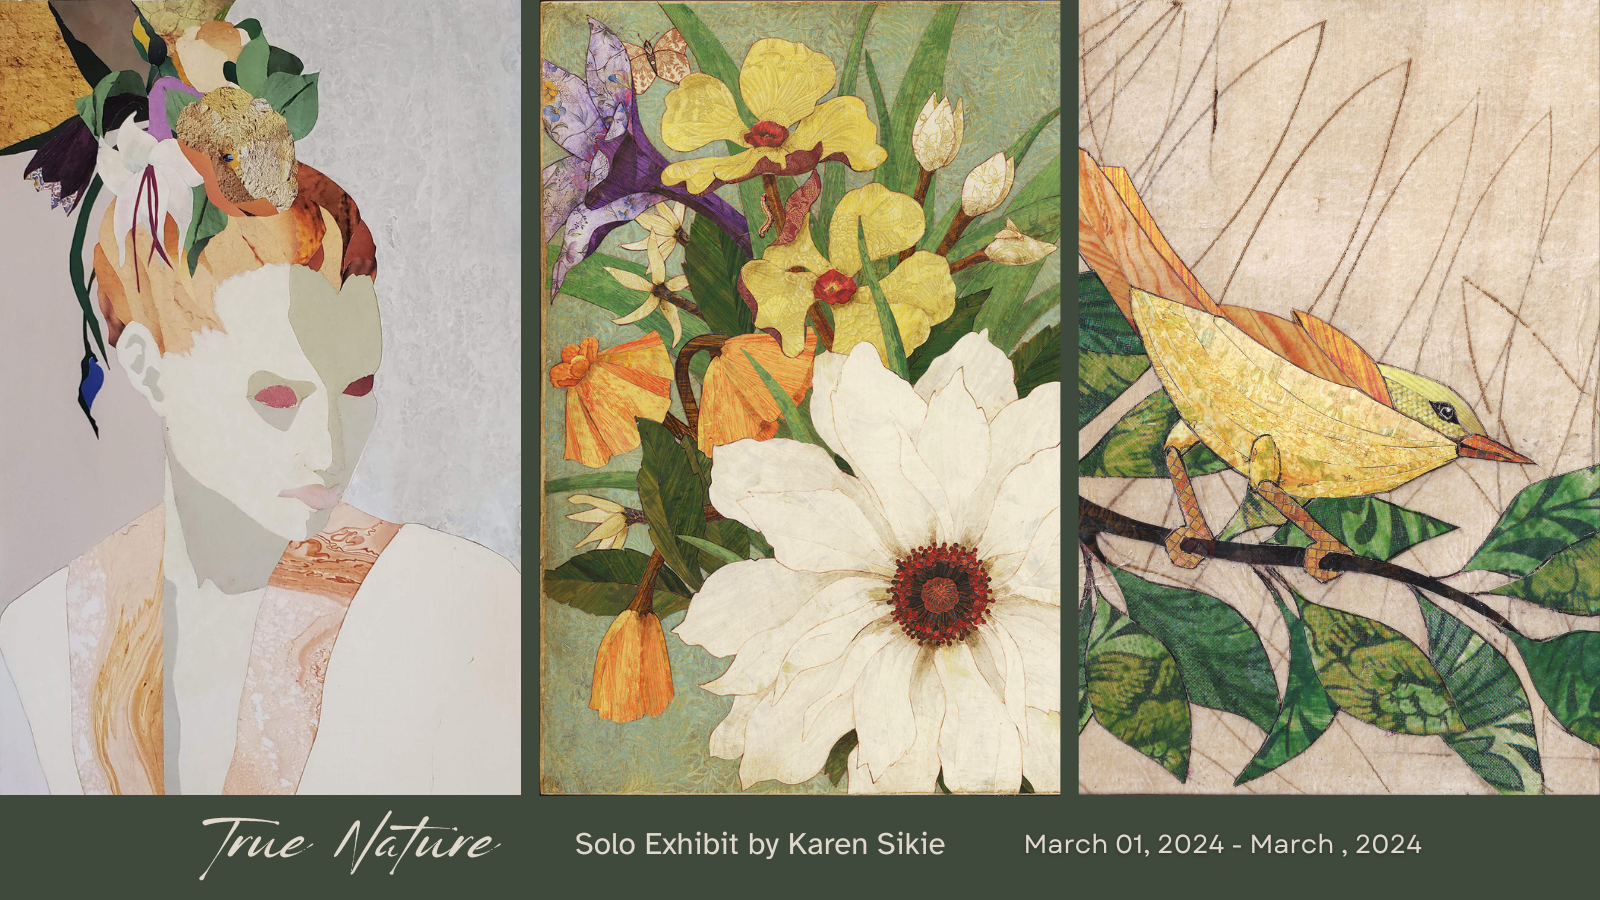 portrait, flower bouquet, and bird by karen sikie